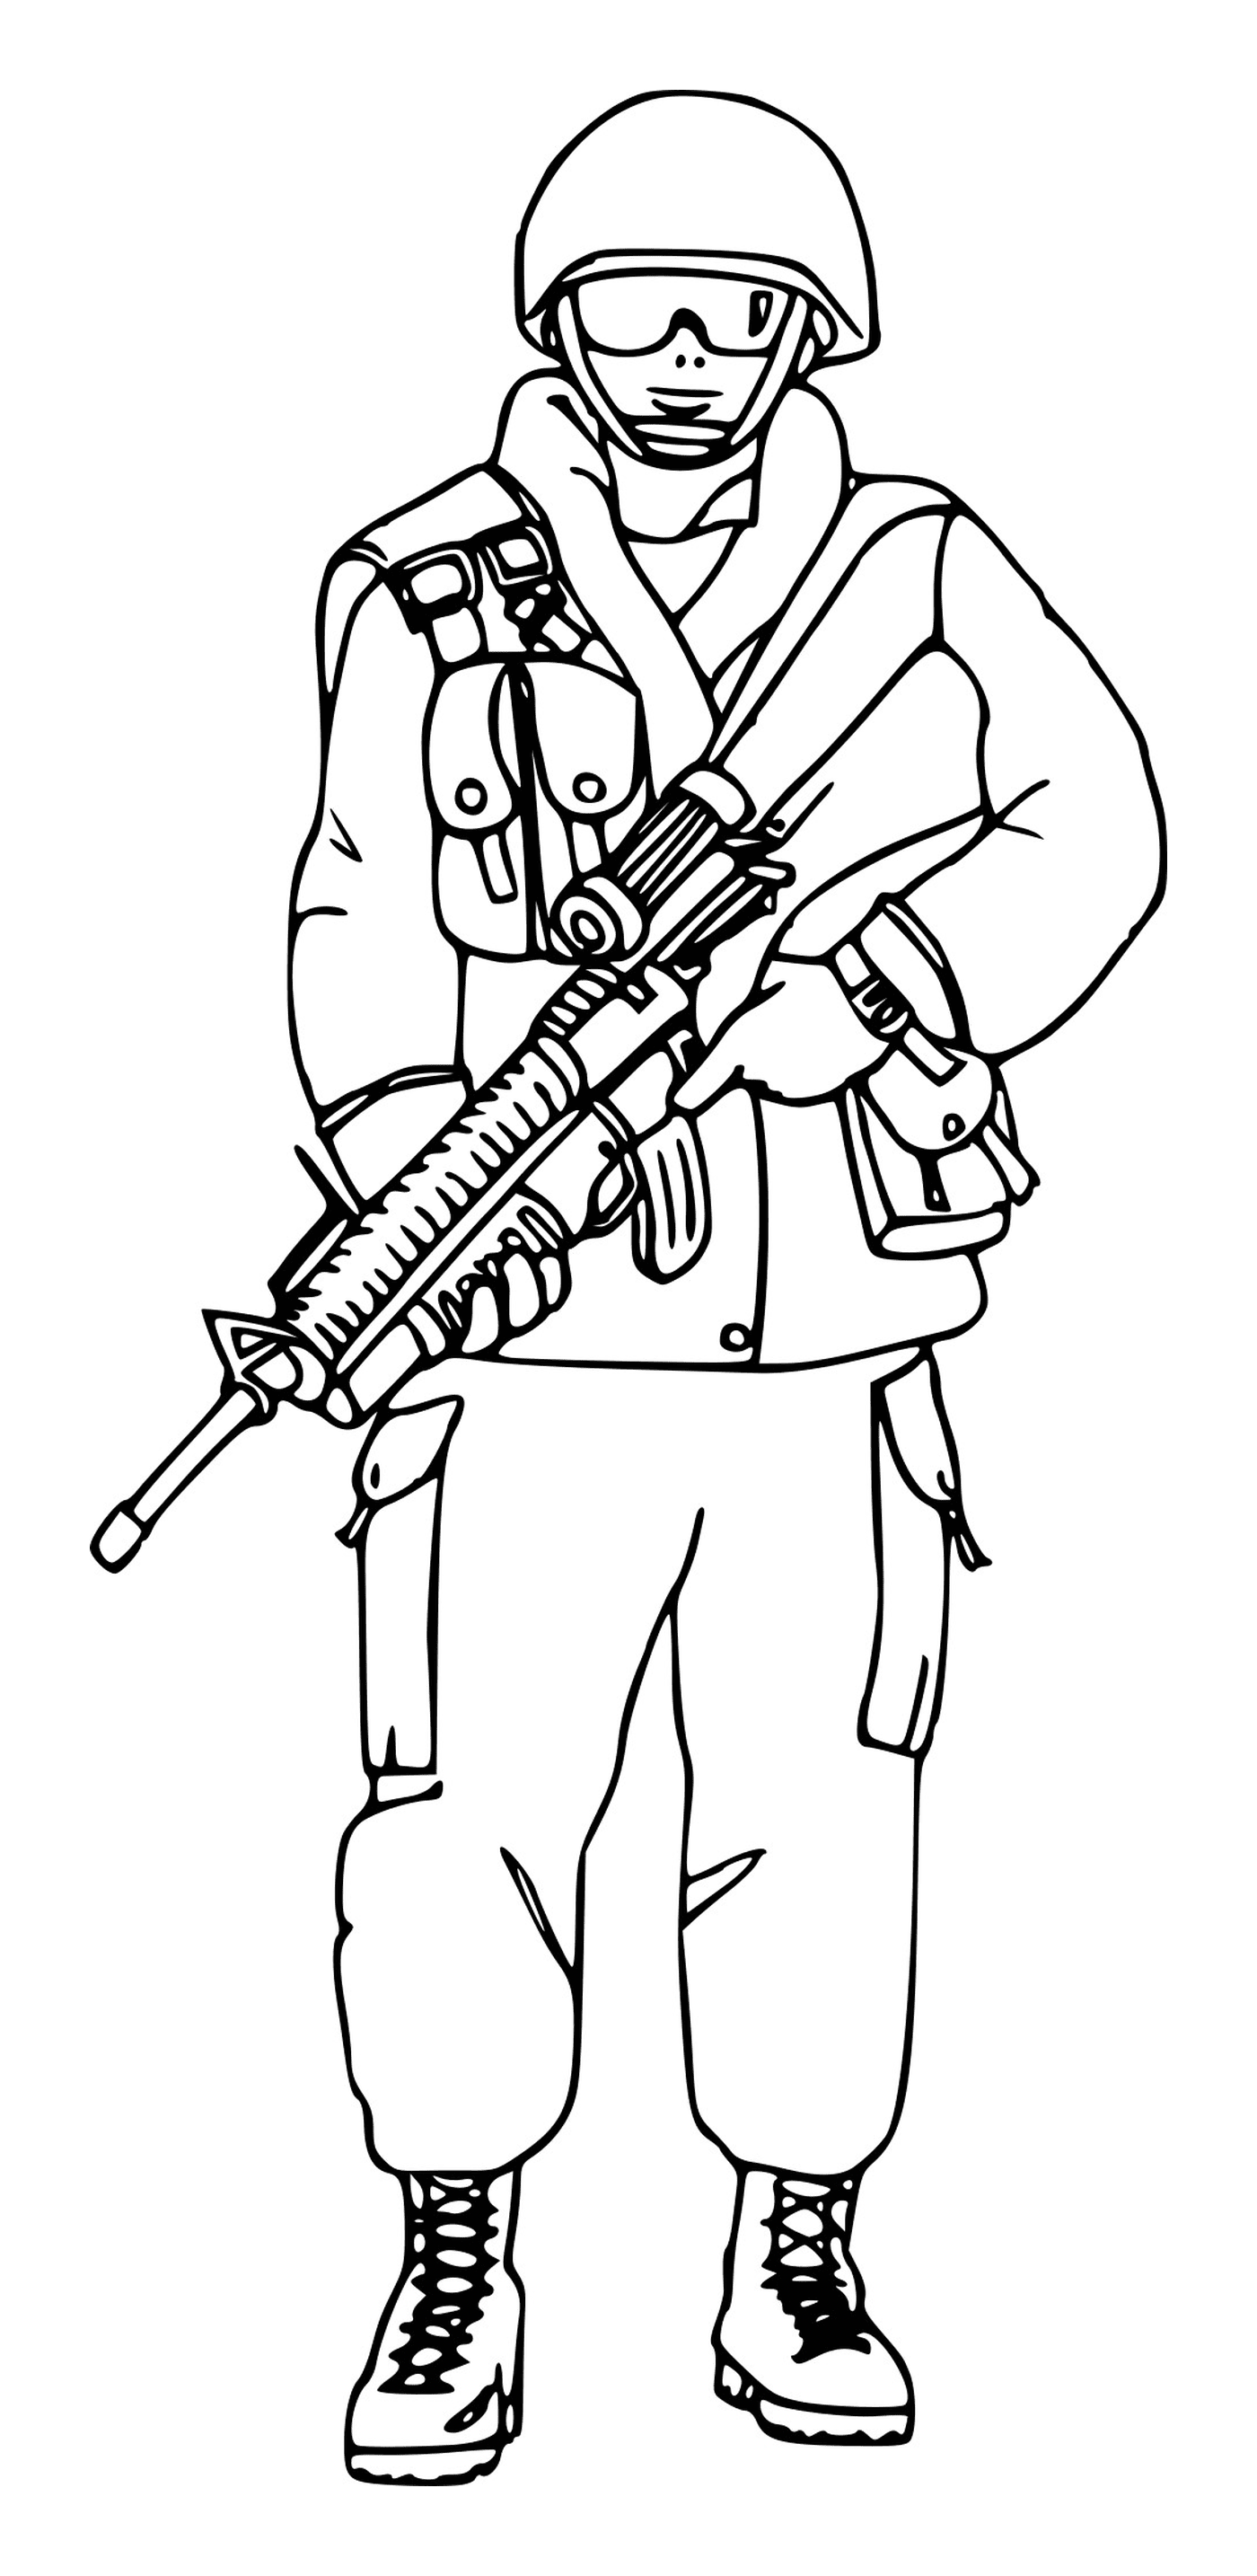  Солдат в очках: солдат с винтовкой 